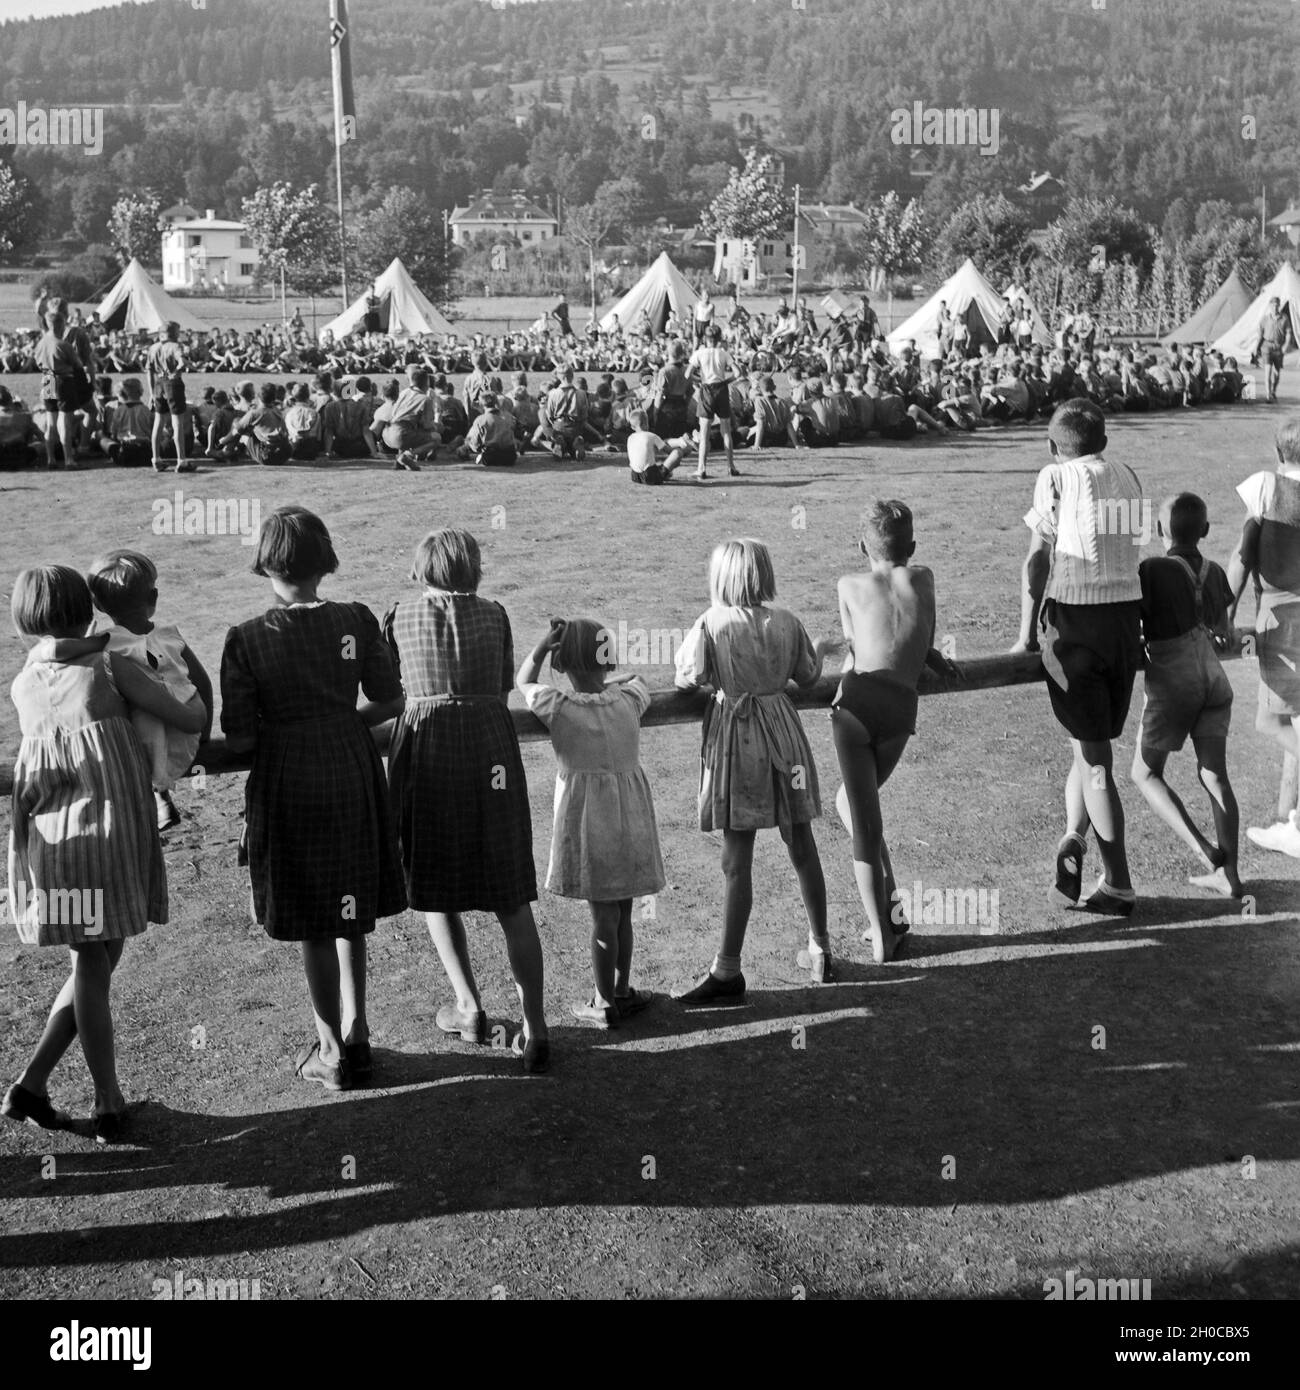 Zivilistenkinder schauen den Hitlerjungen bei einem Sportwettkampf zu im Hitlerjugend Lager, Österreich 1930er Jahre. Ciivilian children watching a Hitler youth sports competition at the camp, Austria 1930s. Stock Photo